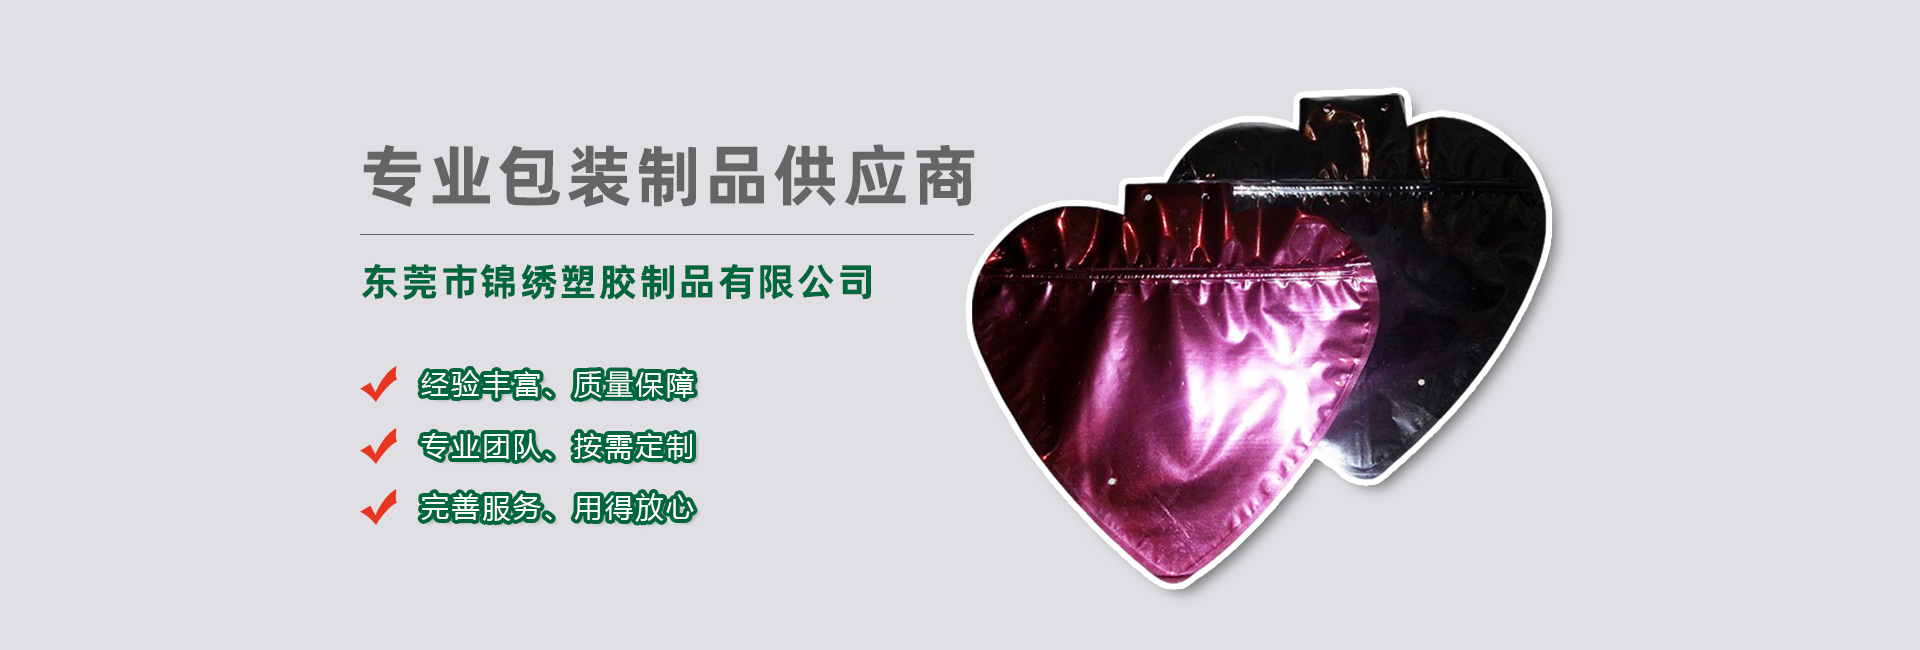 天津食品袋banner